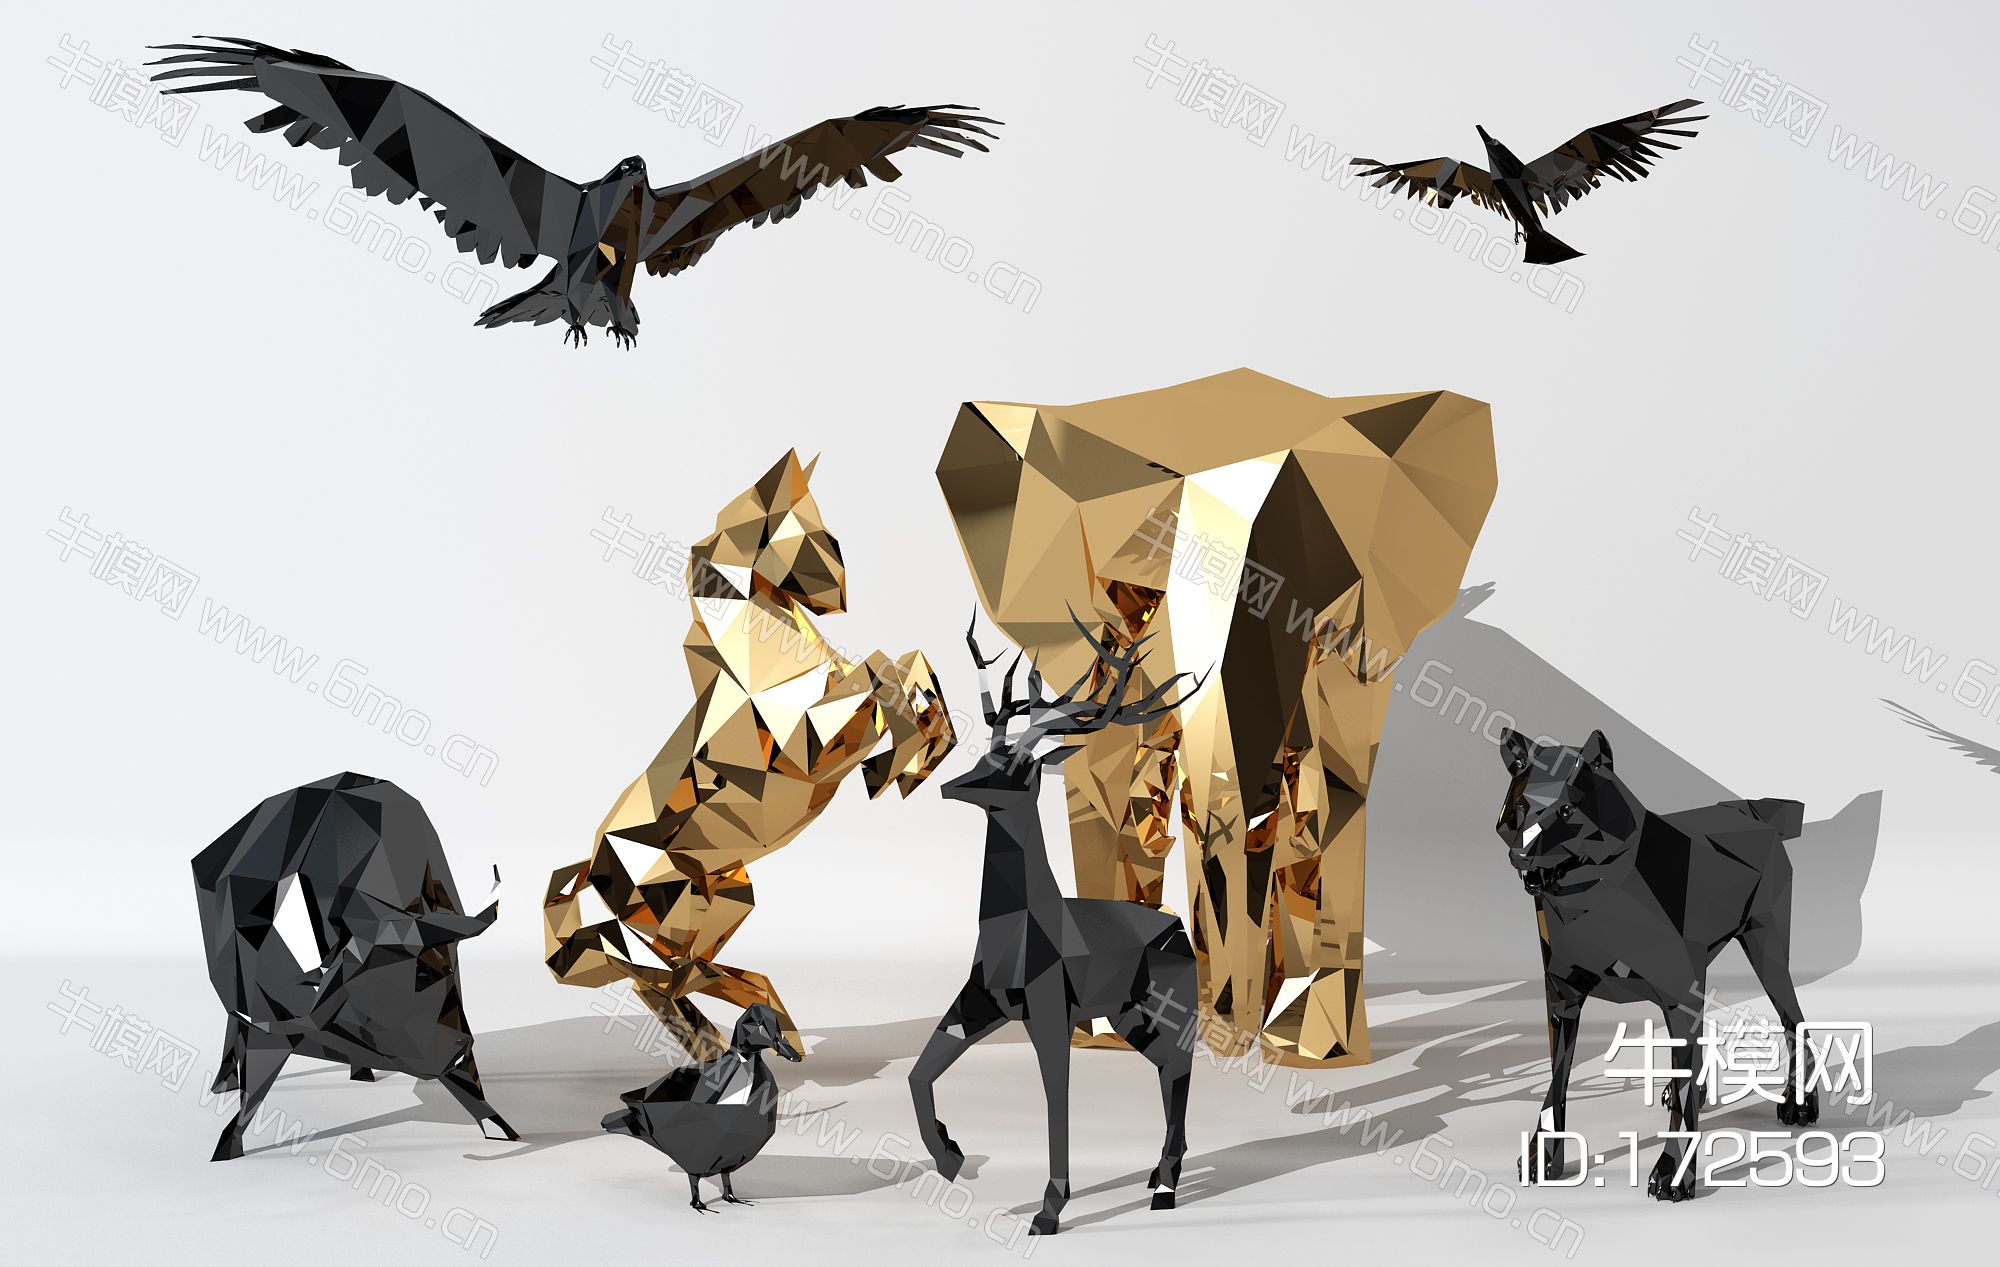 现代金属几何动物雕塑摆件